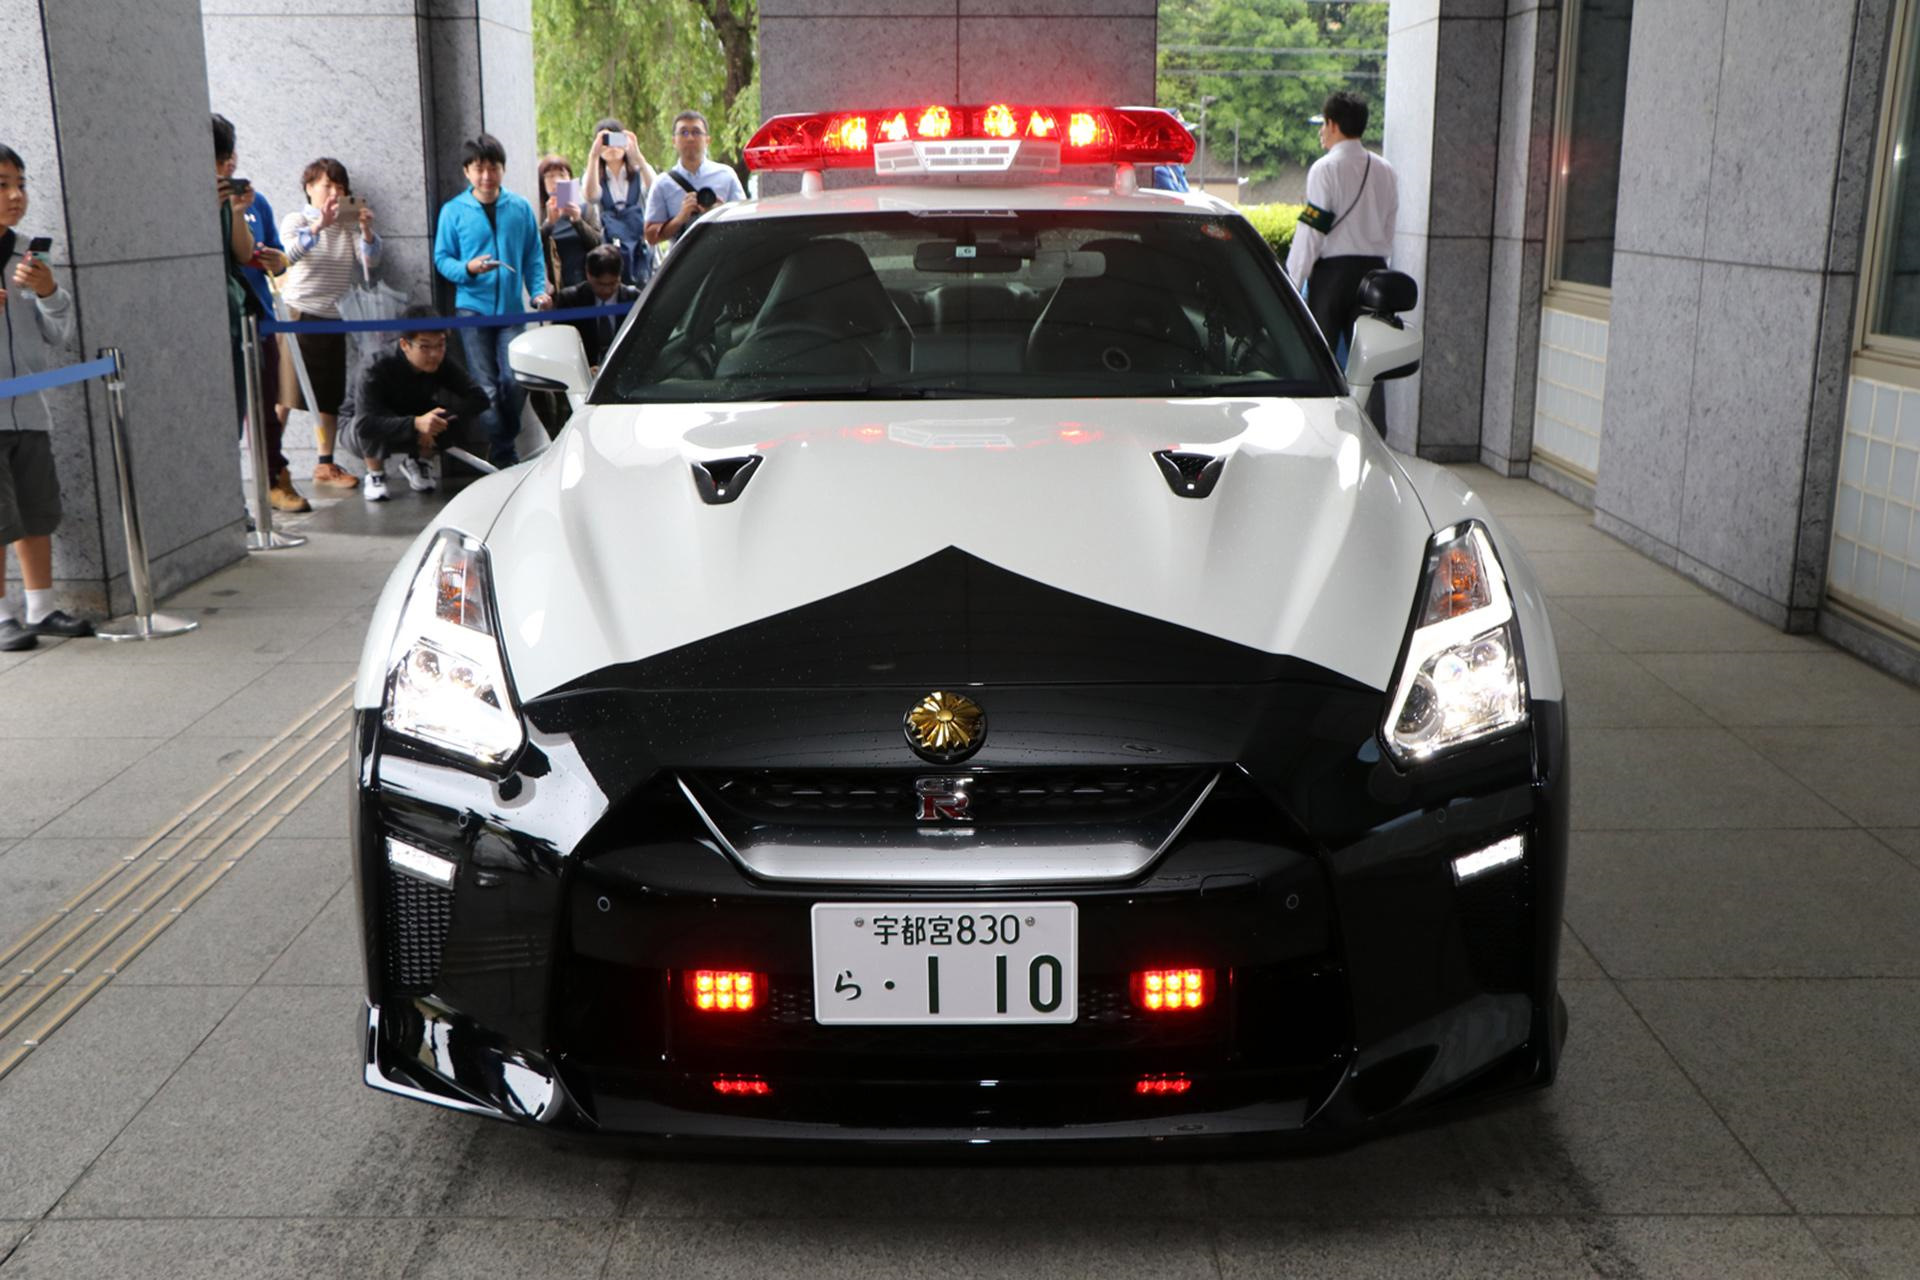 Nissan GTR r35 Police